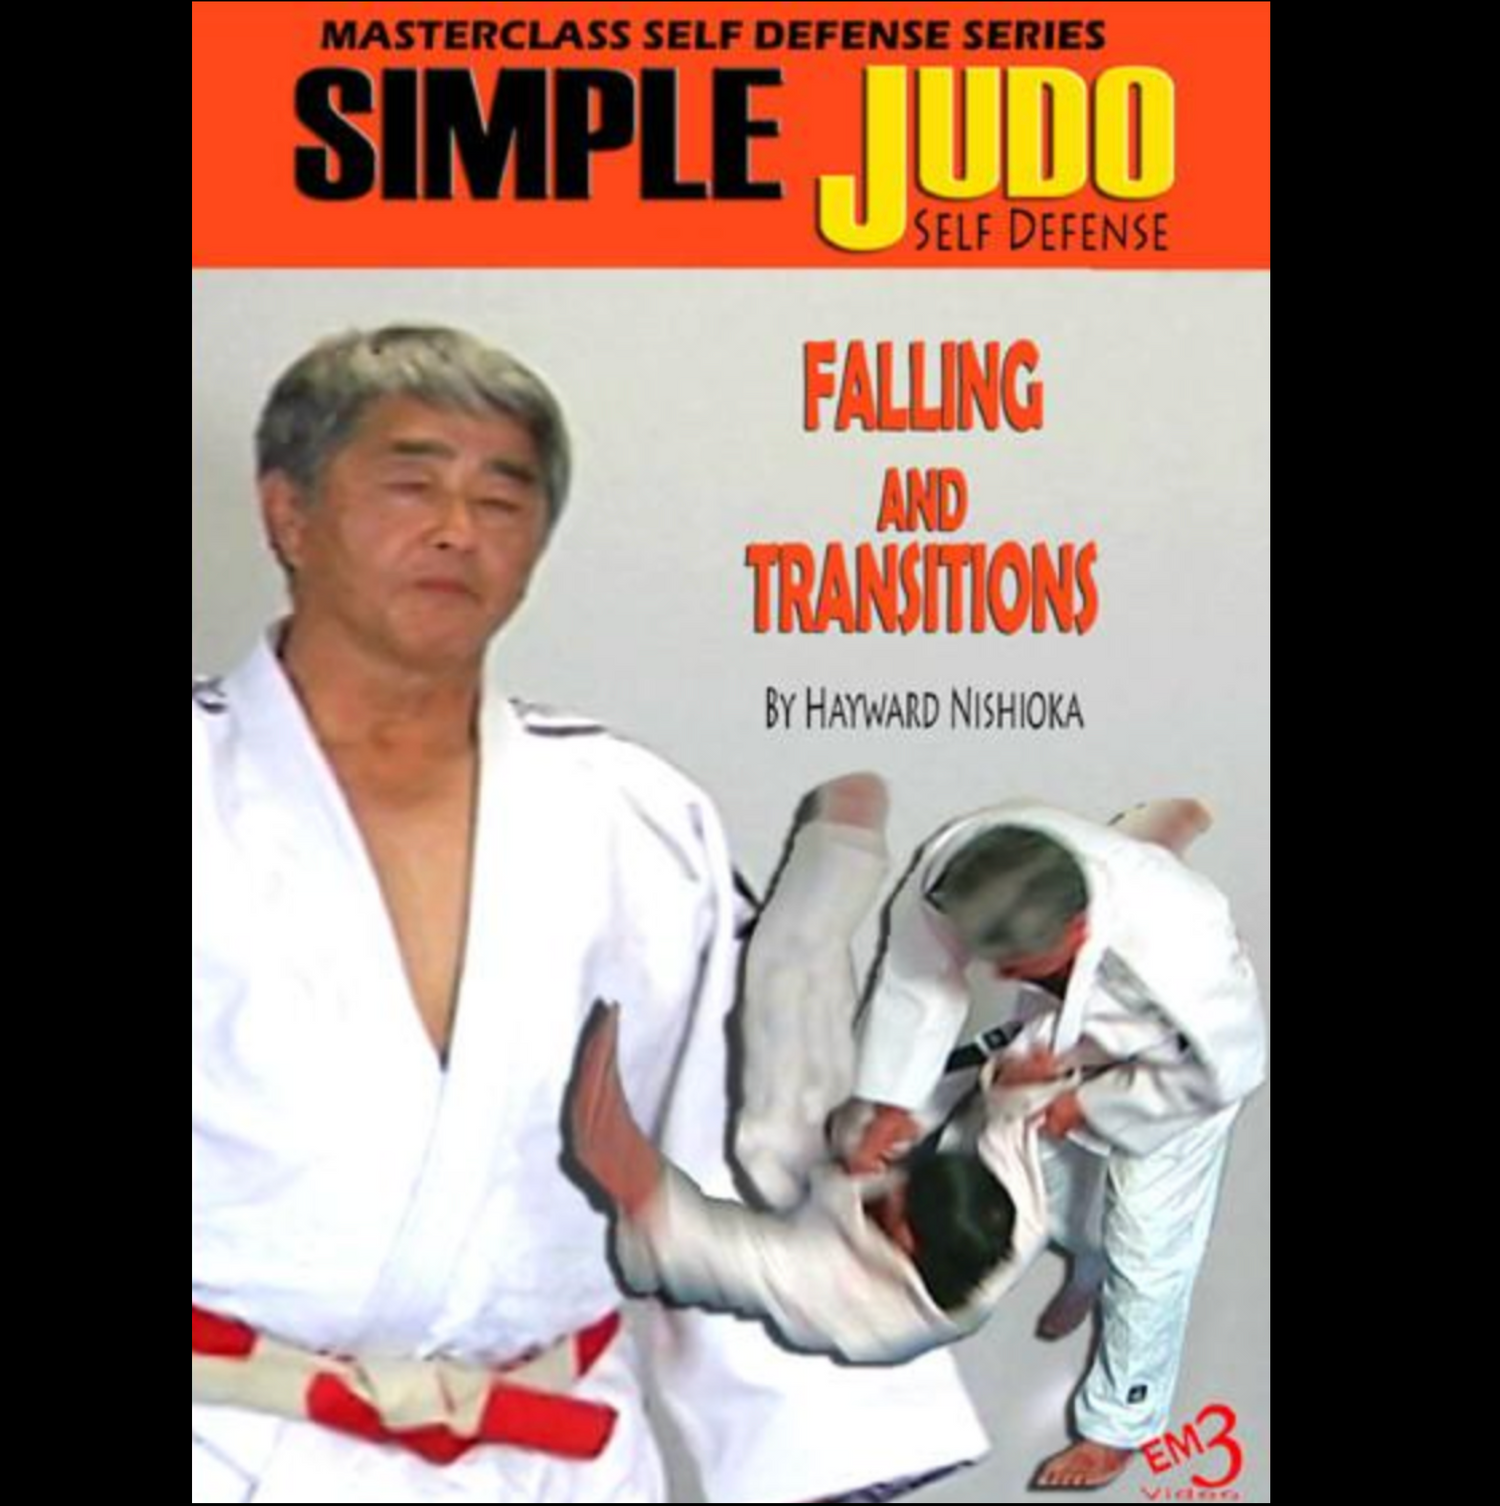 Judo Caída y Transiciones con Hayward Nishioka (On Demand)